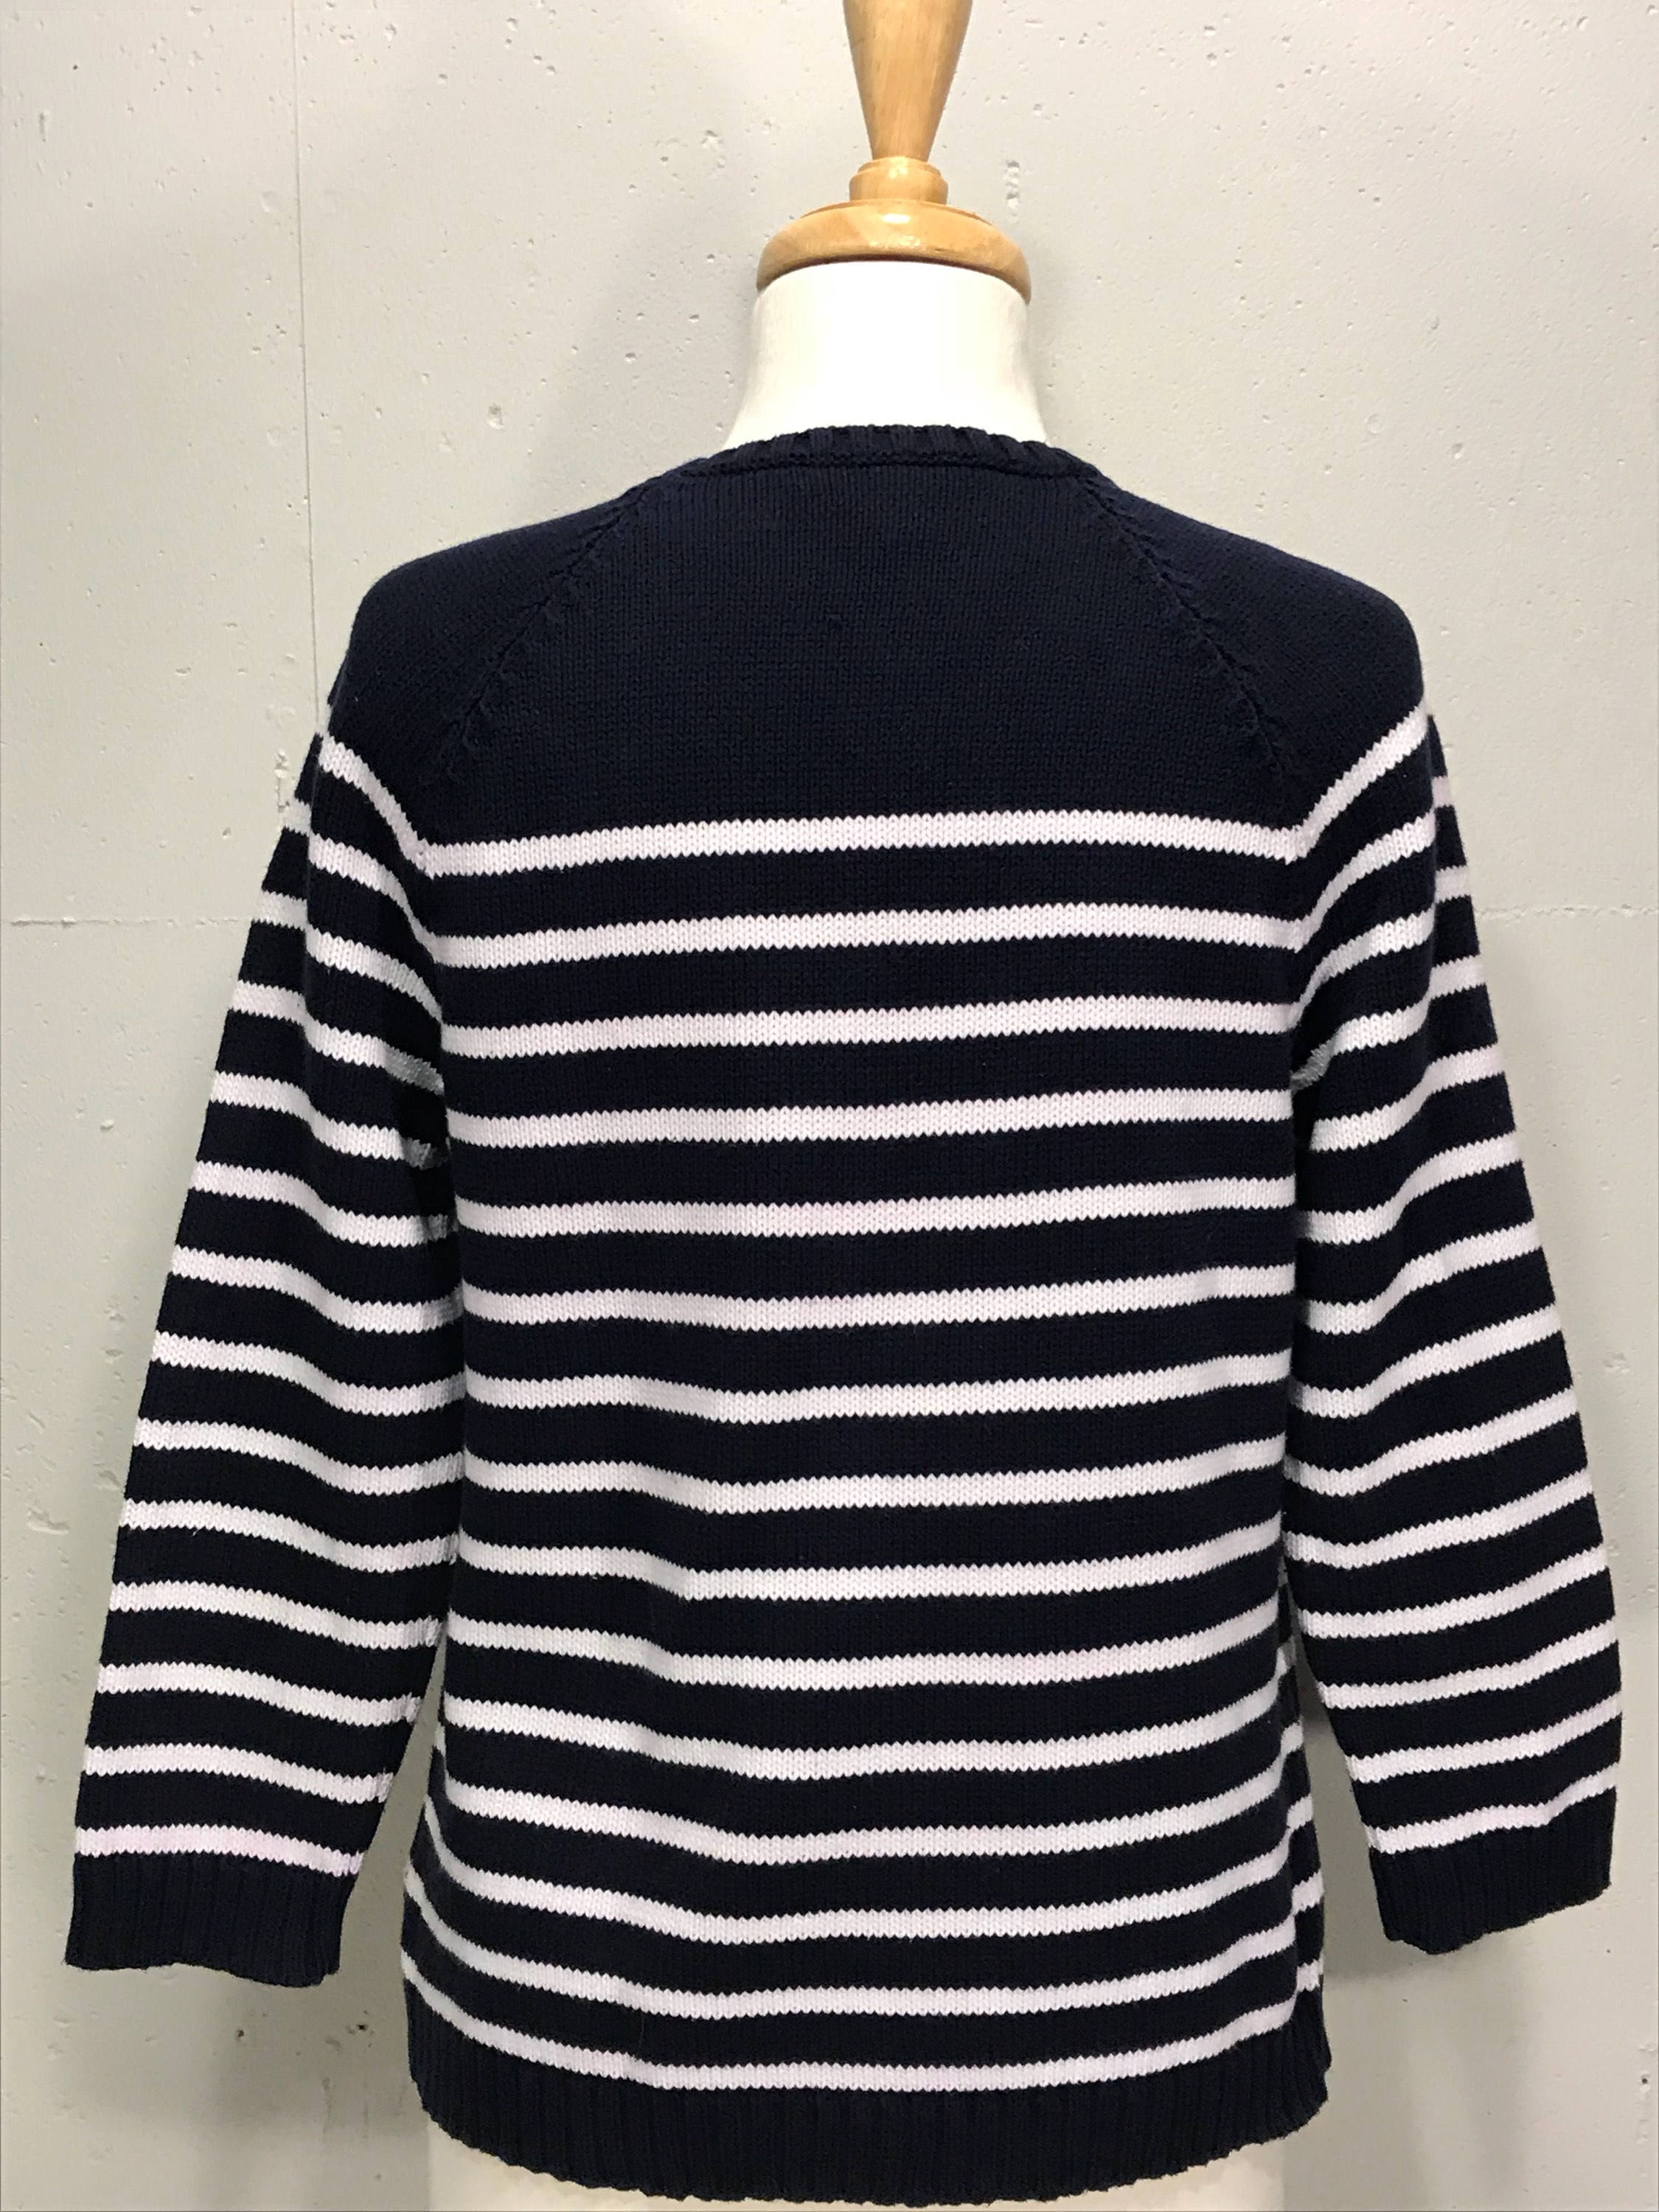 90s Lauren Ralph Lauren Natuical Sweater Striped Brass Buttons | Etsy